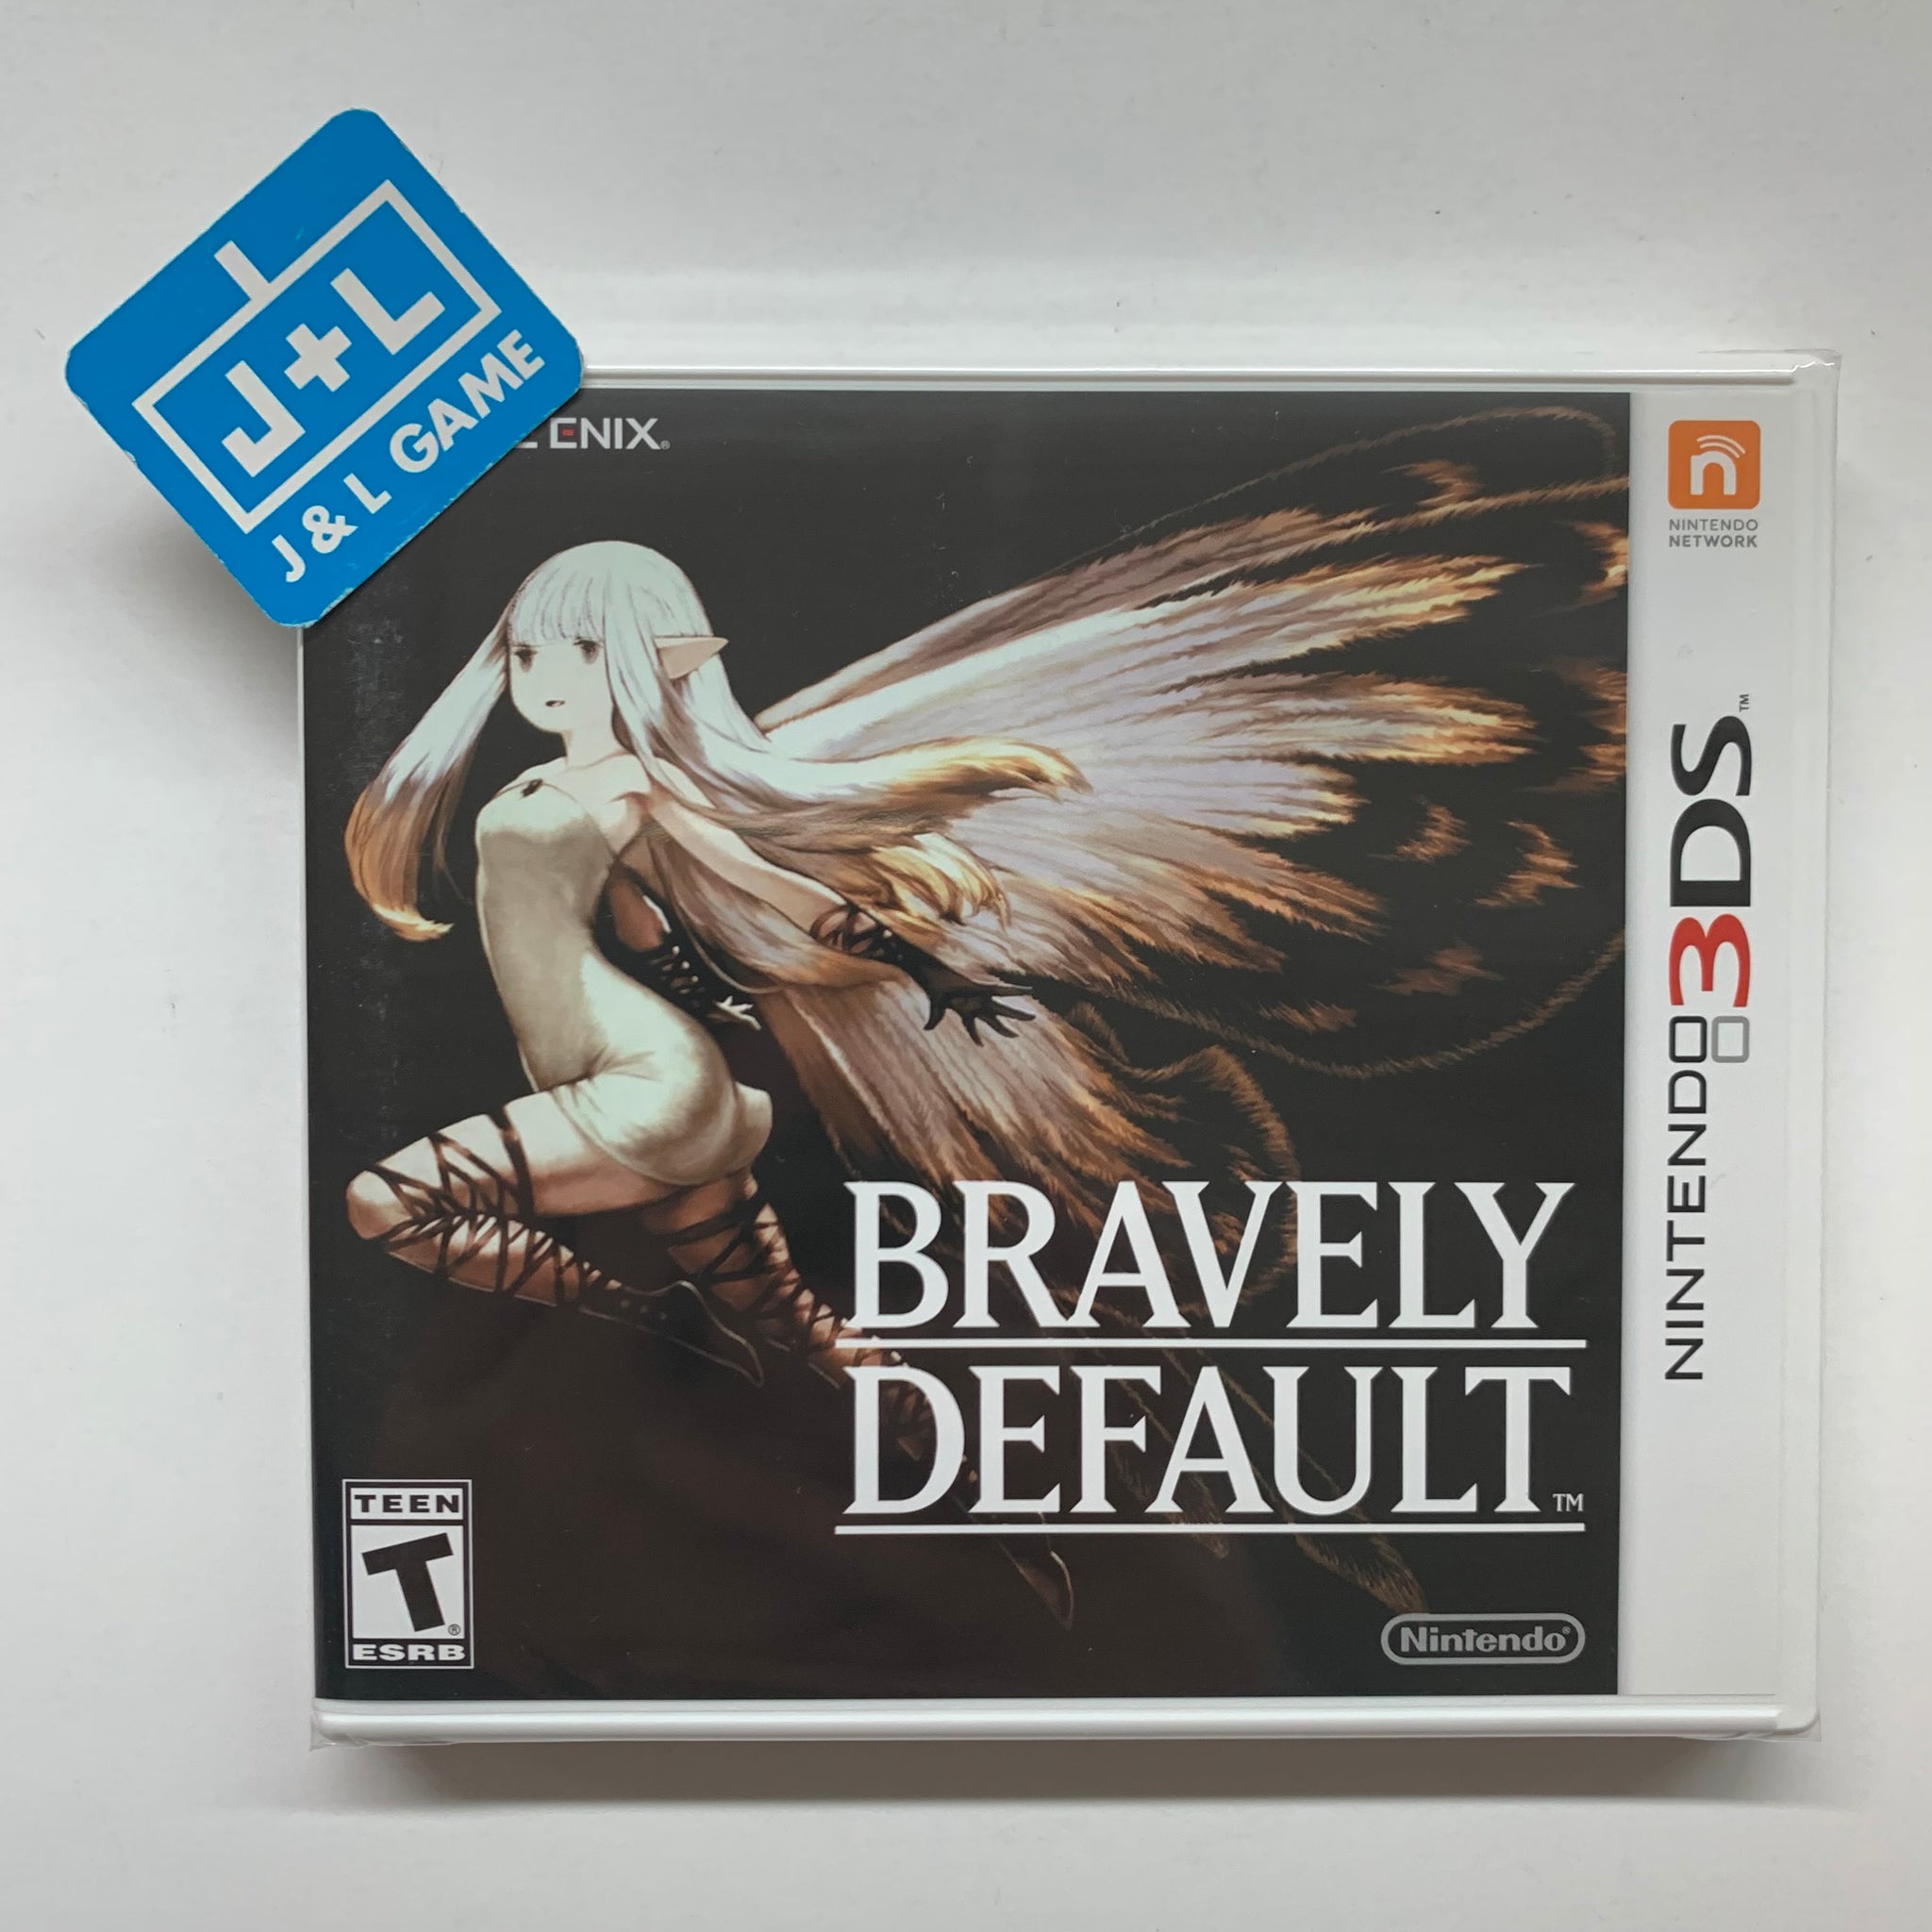 Bravely Default - Nintendo 3DS Video Games Square Enix   